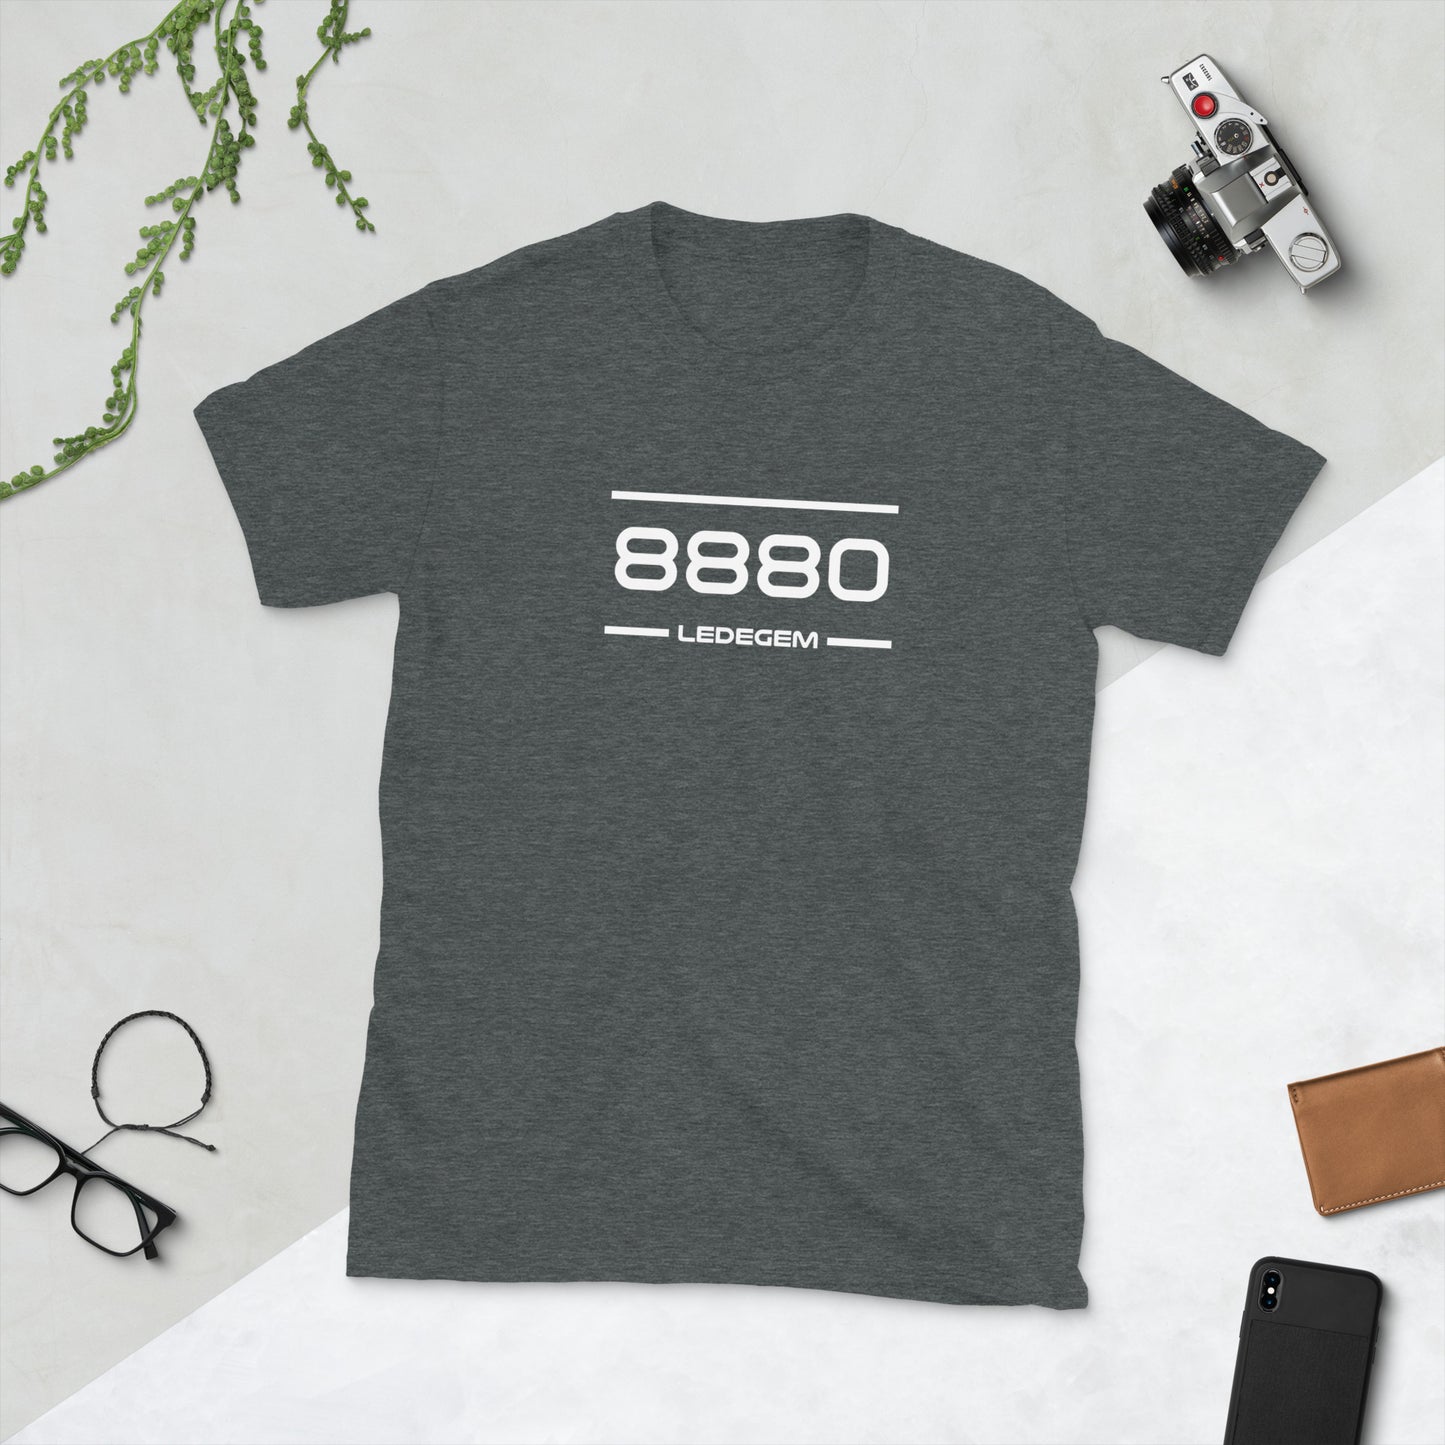 Tshirt - 8880 - Ledegem